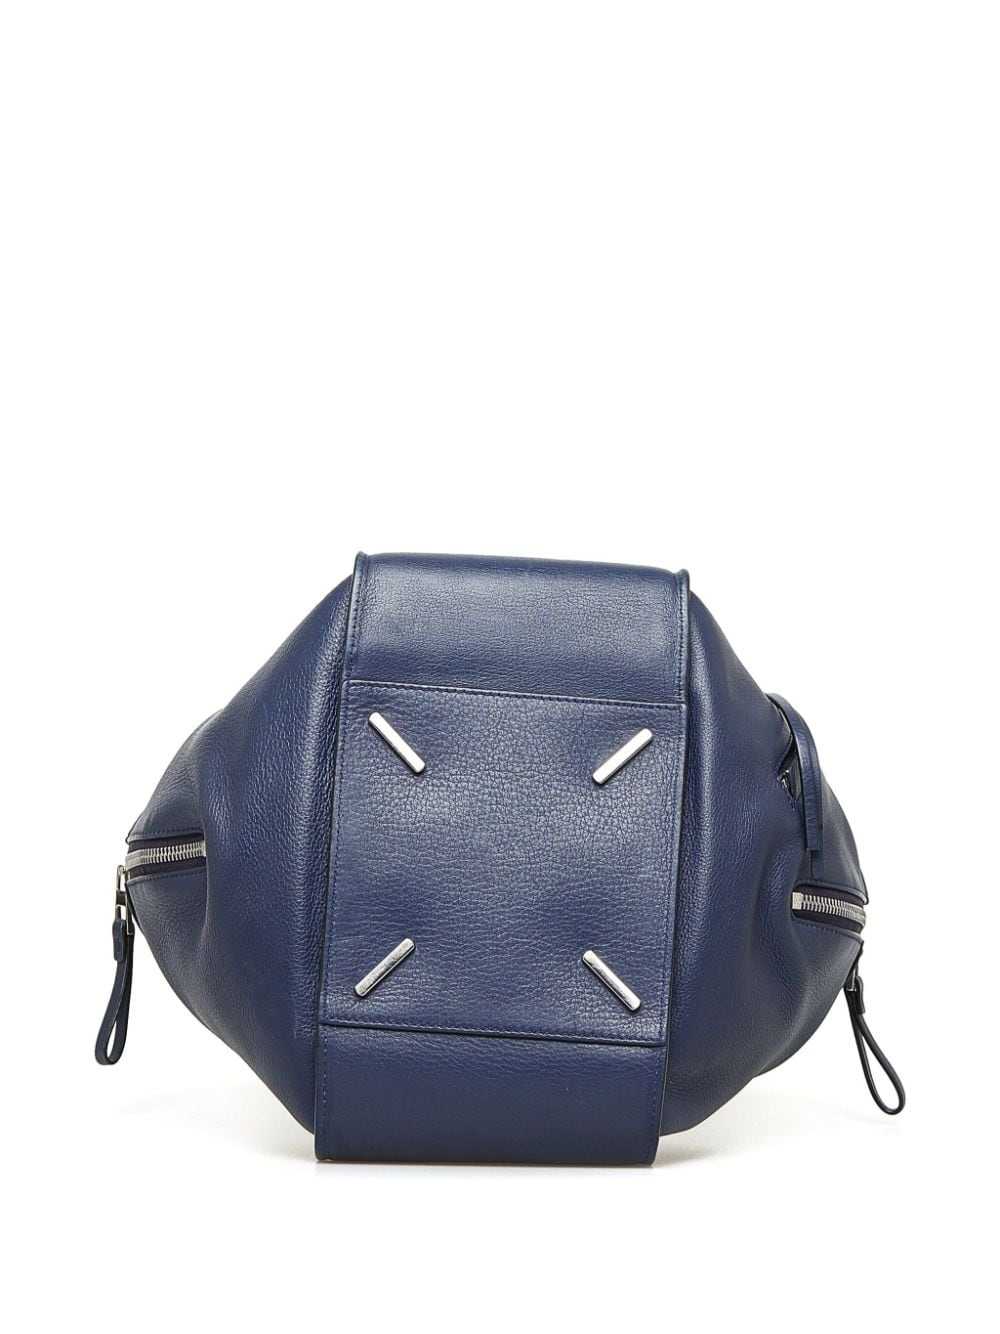 Loewe Pre-Owned 2016 Hammock satchel - Blue - image 4